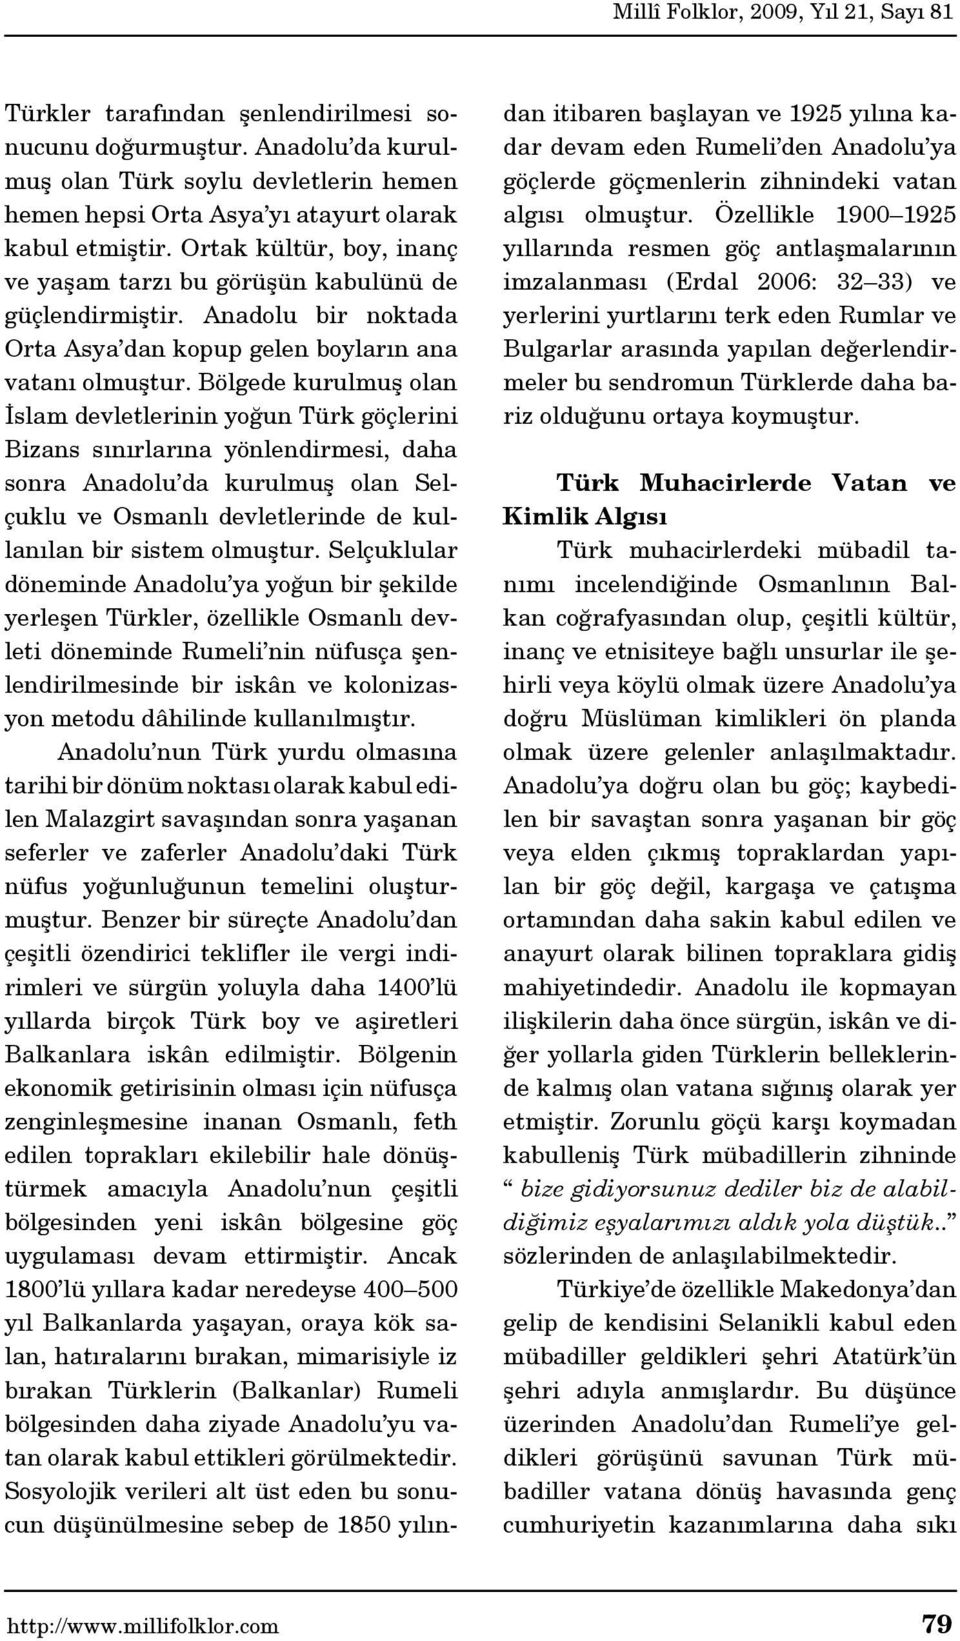 Bölgede kurulmuş olan İslam devletlerinin yoğun Türk göçlerini Bizans sınırlarına yönlendirmesi, daha sonra Anadolu da kurulmuş olan Selçuklu ve Osmanlı devletlerinde de kullanılan bir sistem